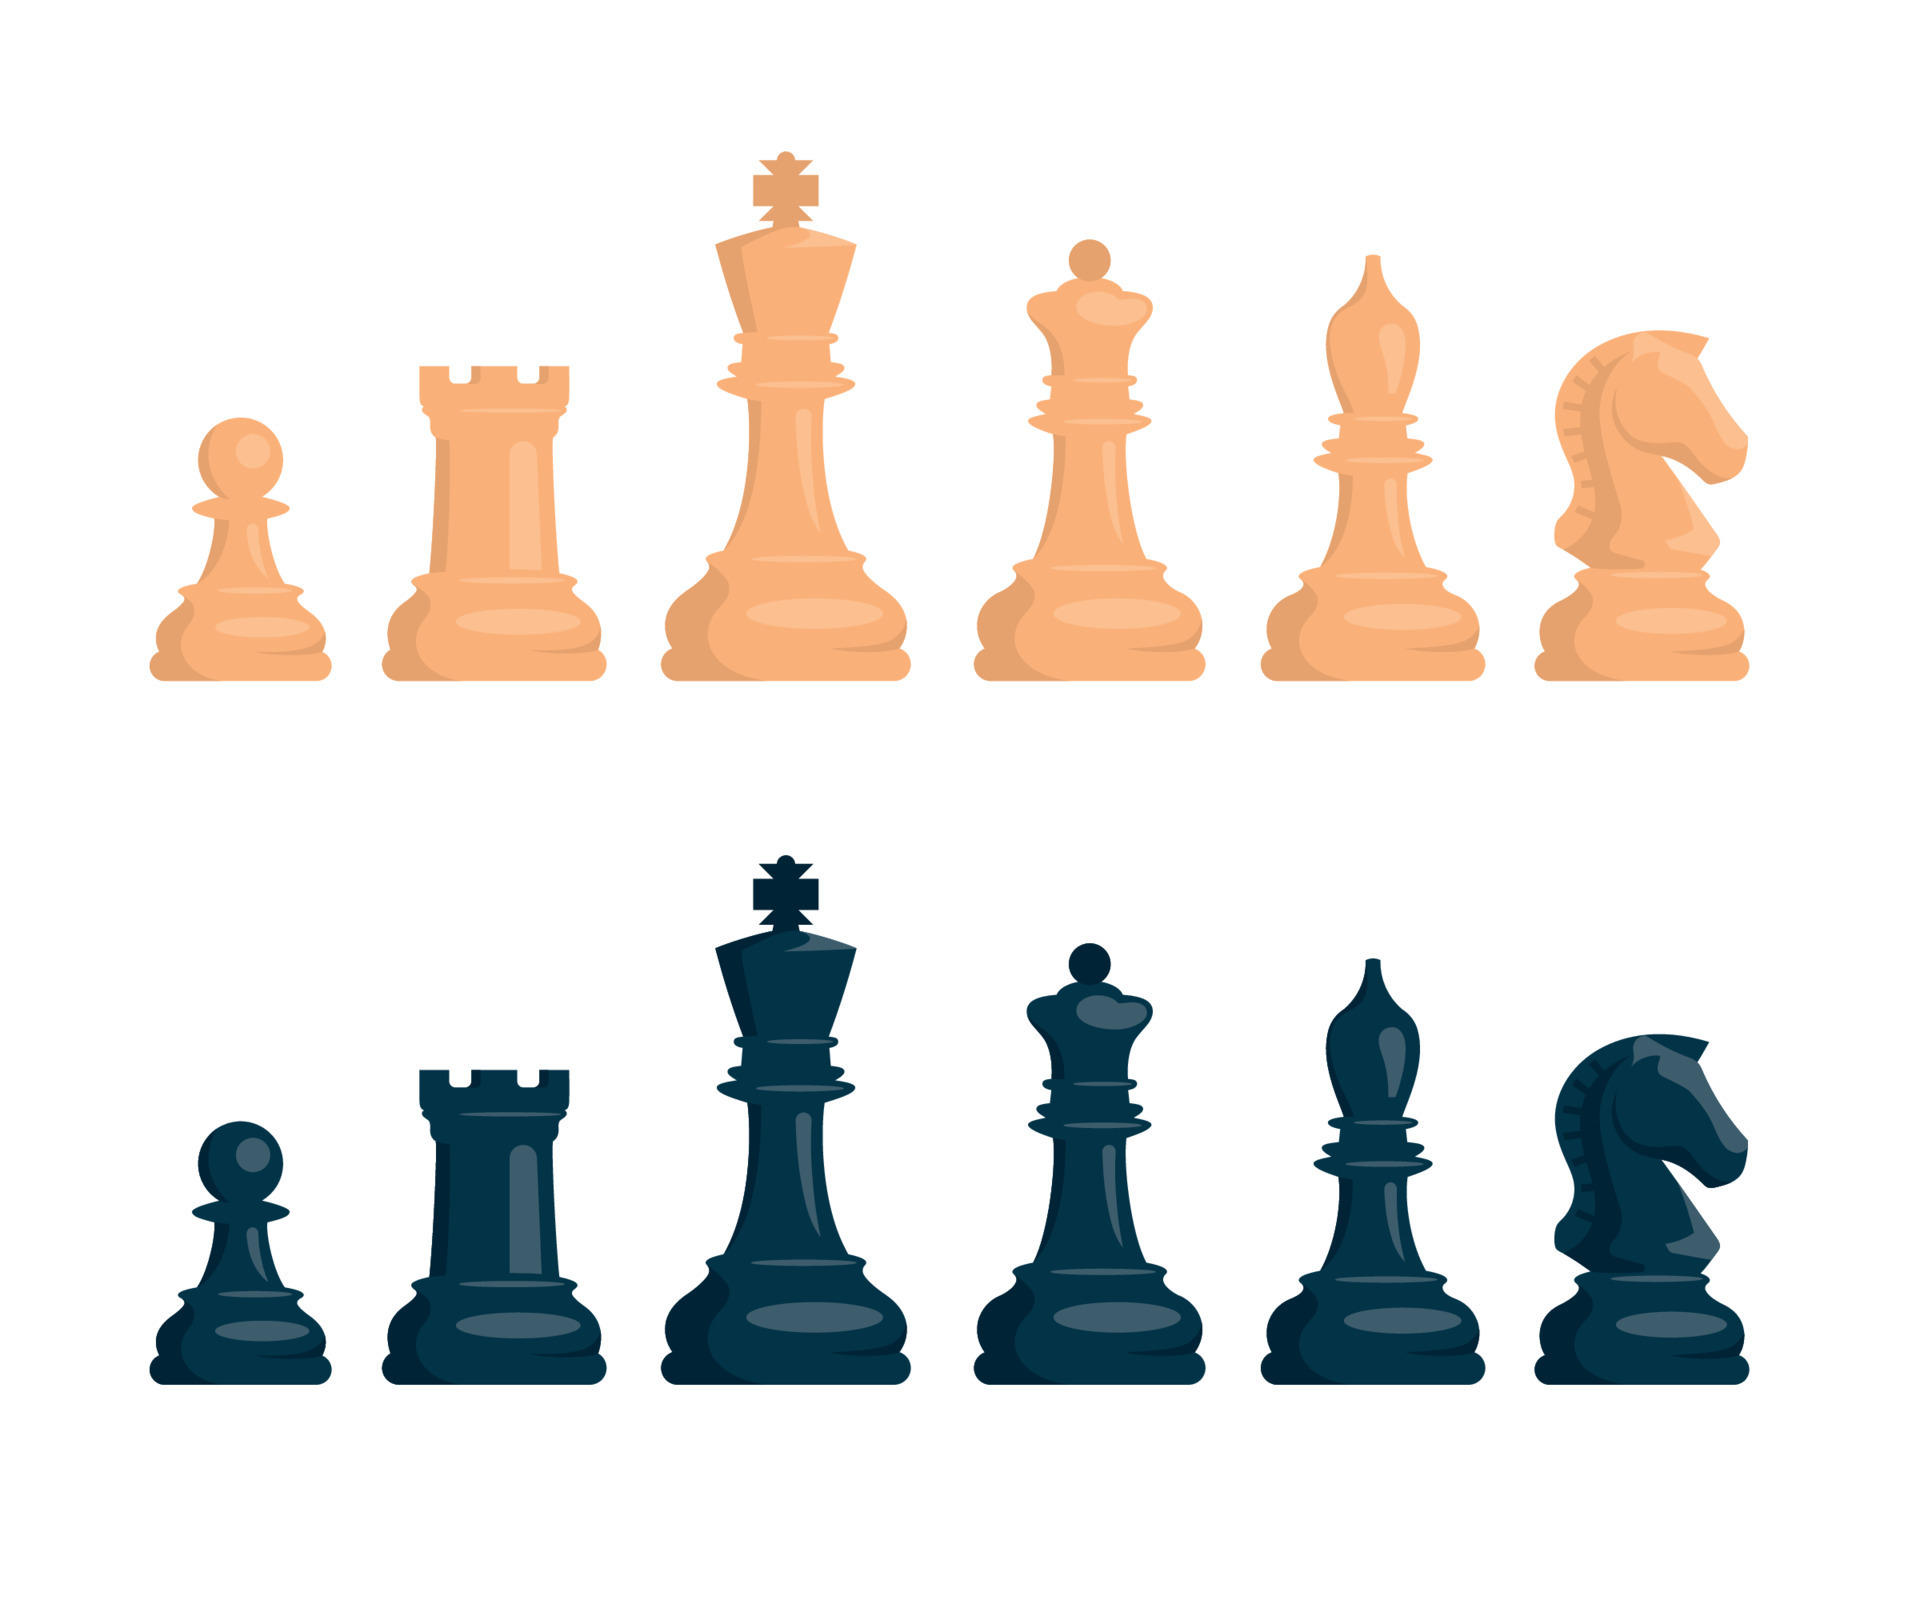 xadrez. conjunto de peças de xadrez brancas e pretas. cavalo, torre, peão,  bispo, rei, rainha. imagem vetorial. 8212699 Vetor no Vecteezy